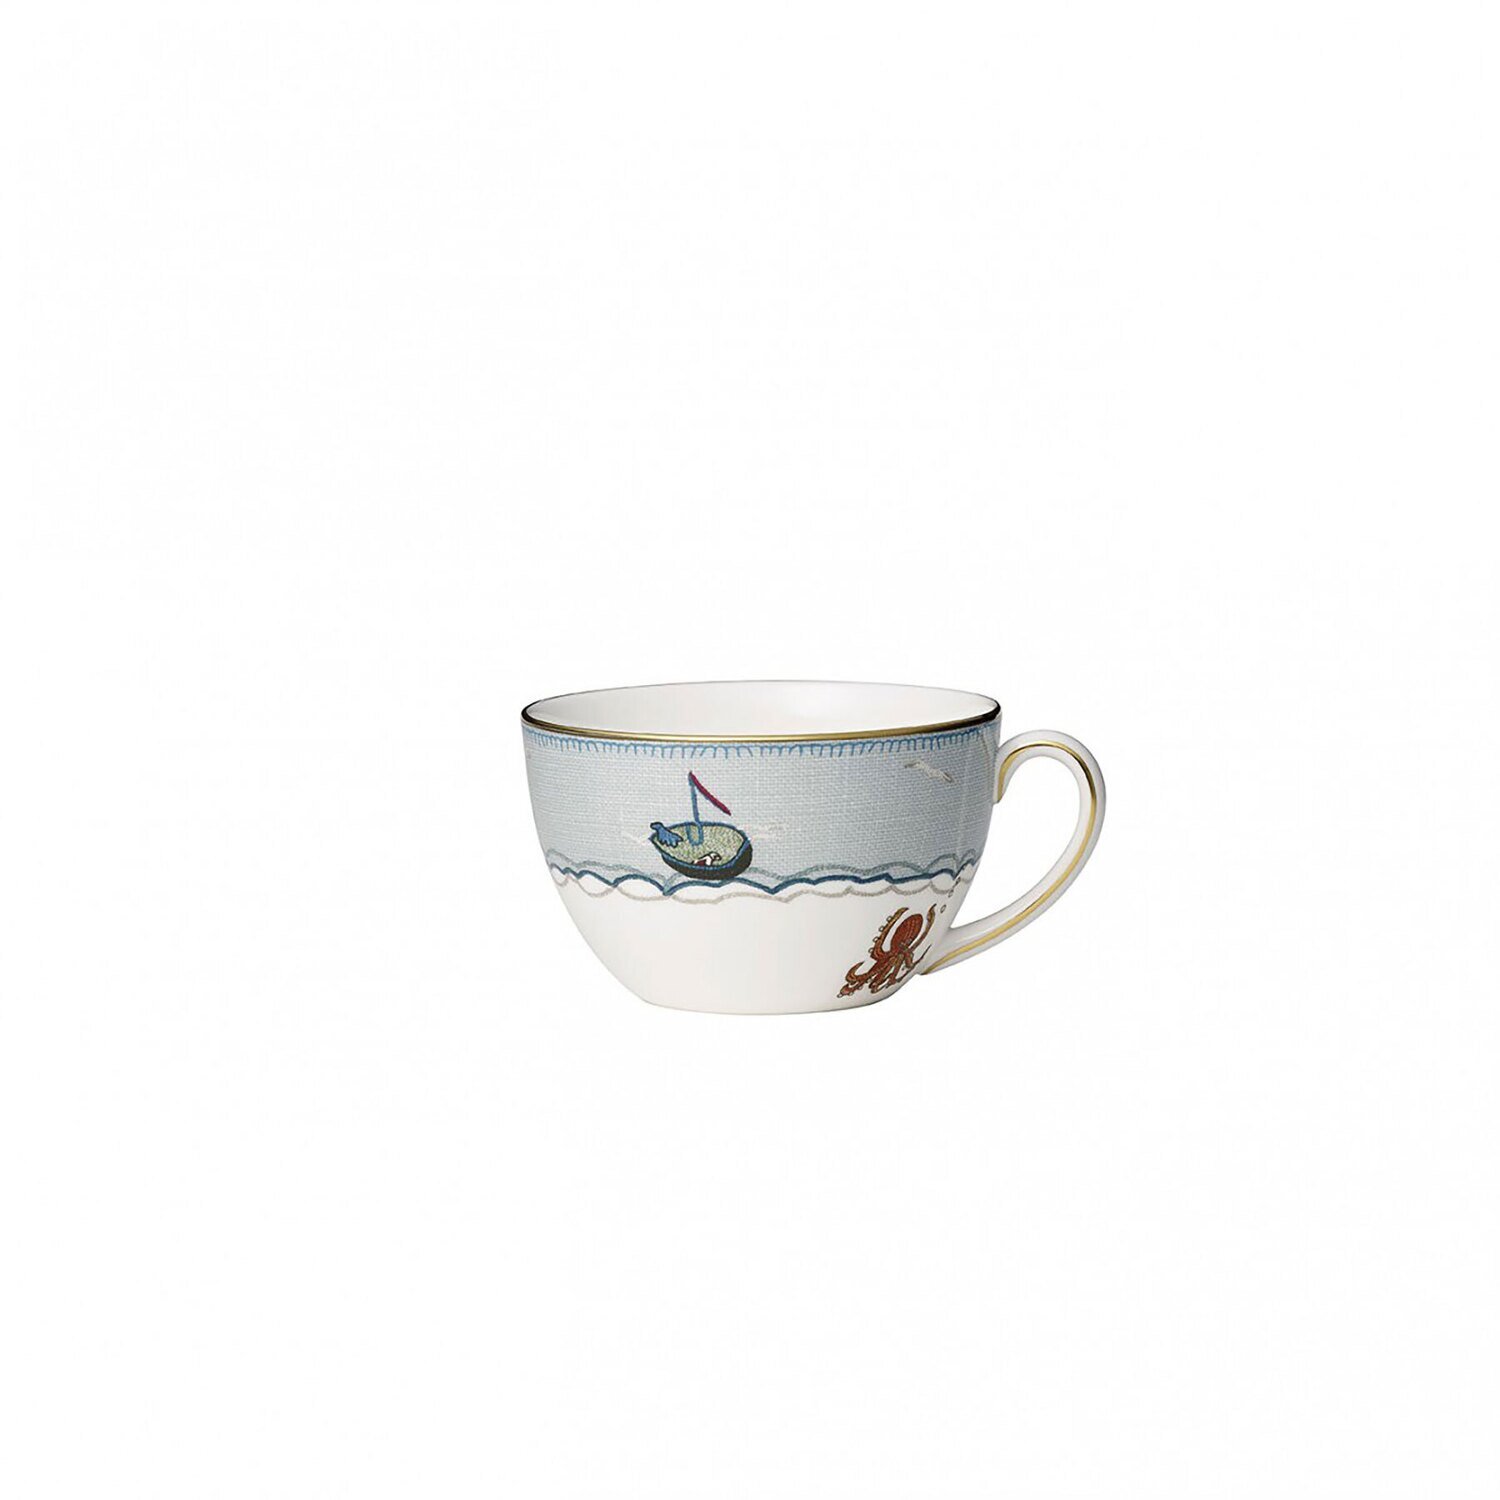 Wedgwood Sailors Farewell Breakfast Cup & Saucer Set 1050200